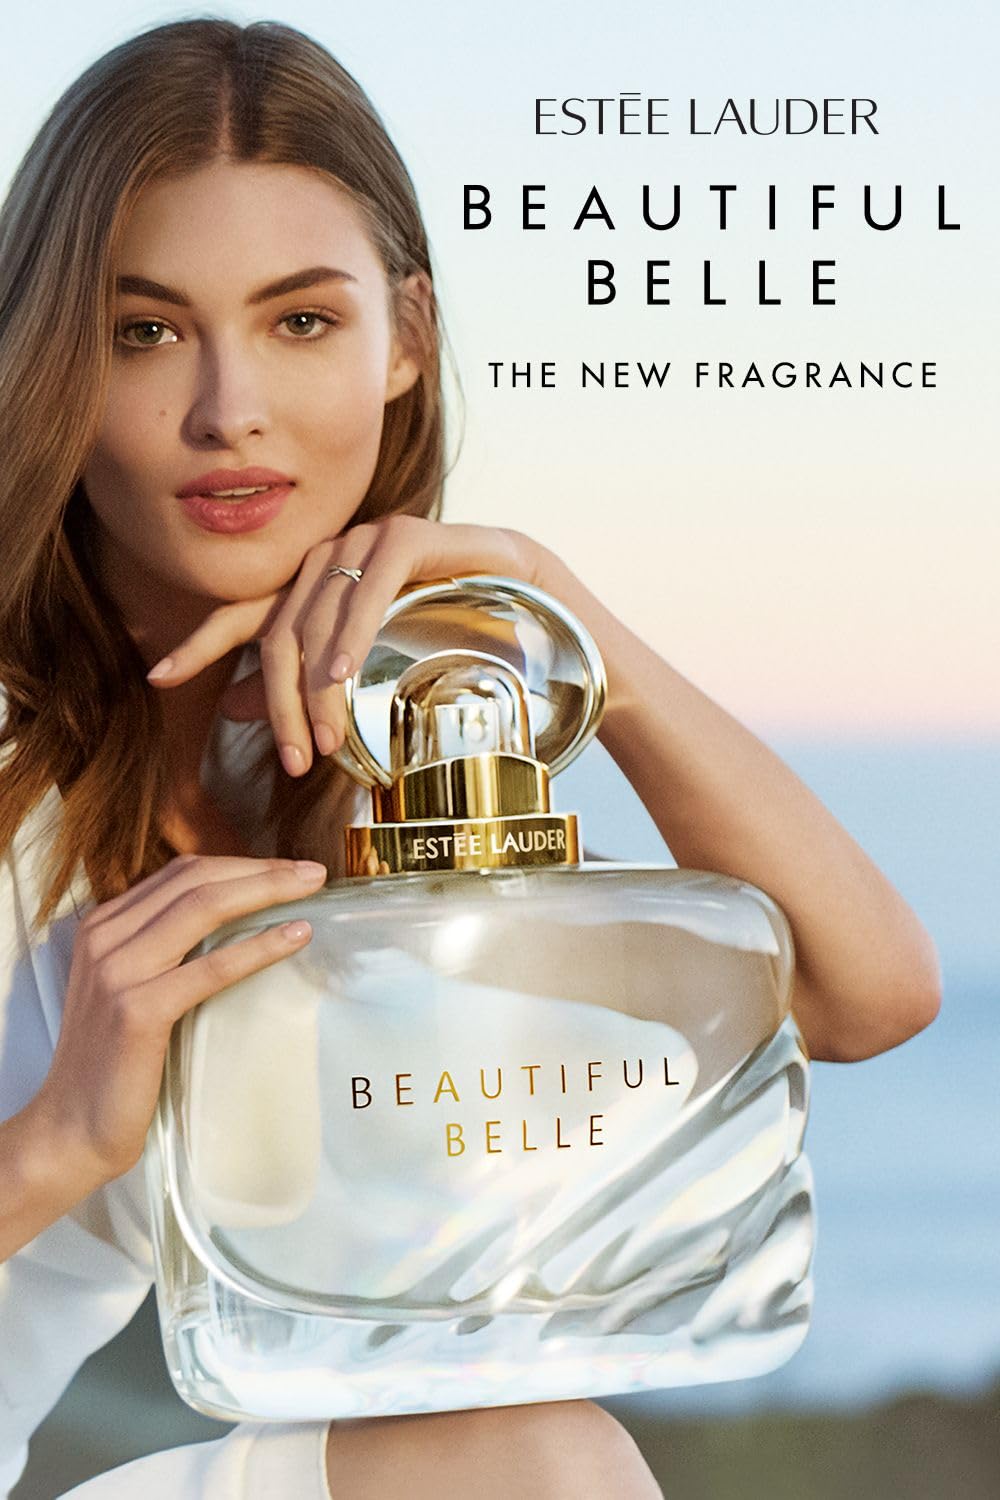 Beautiful Belle Eau de Parfum for Women - Perfume Planet 